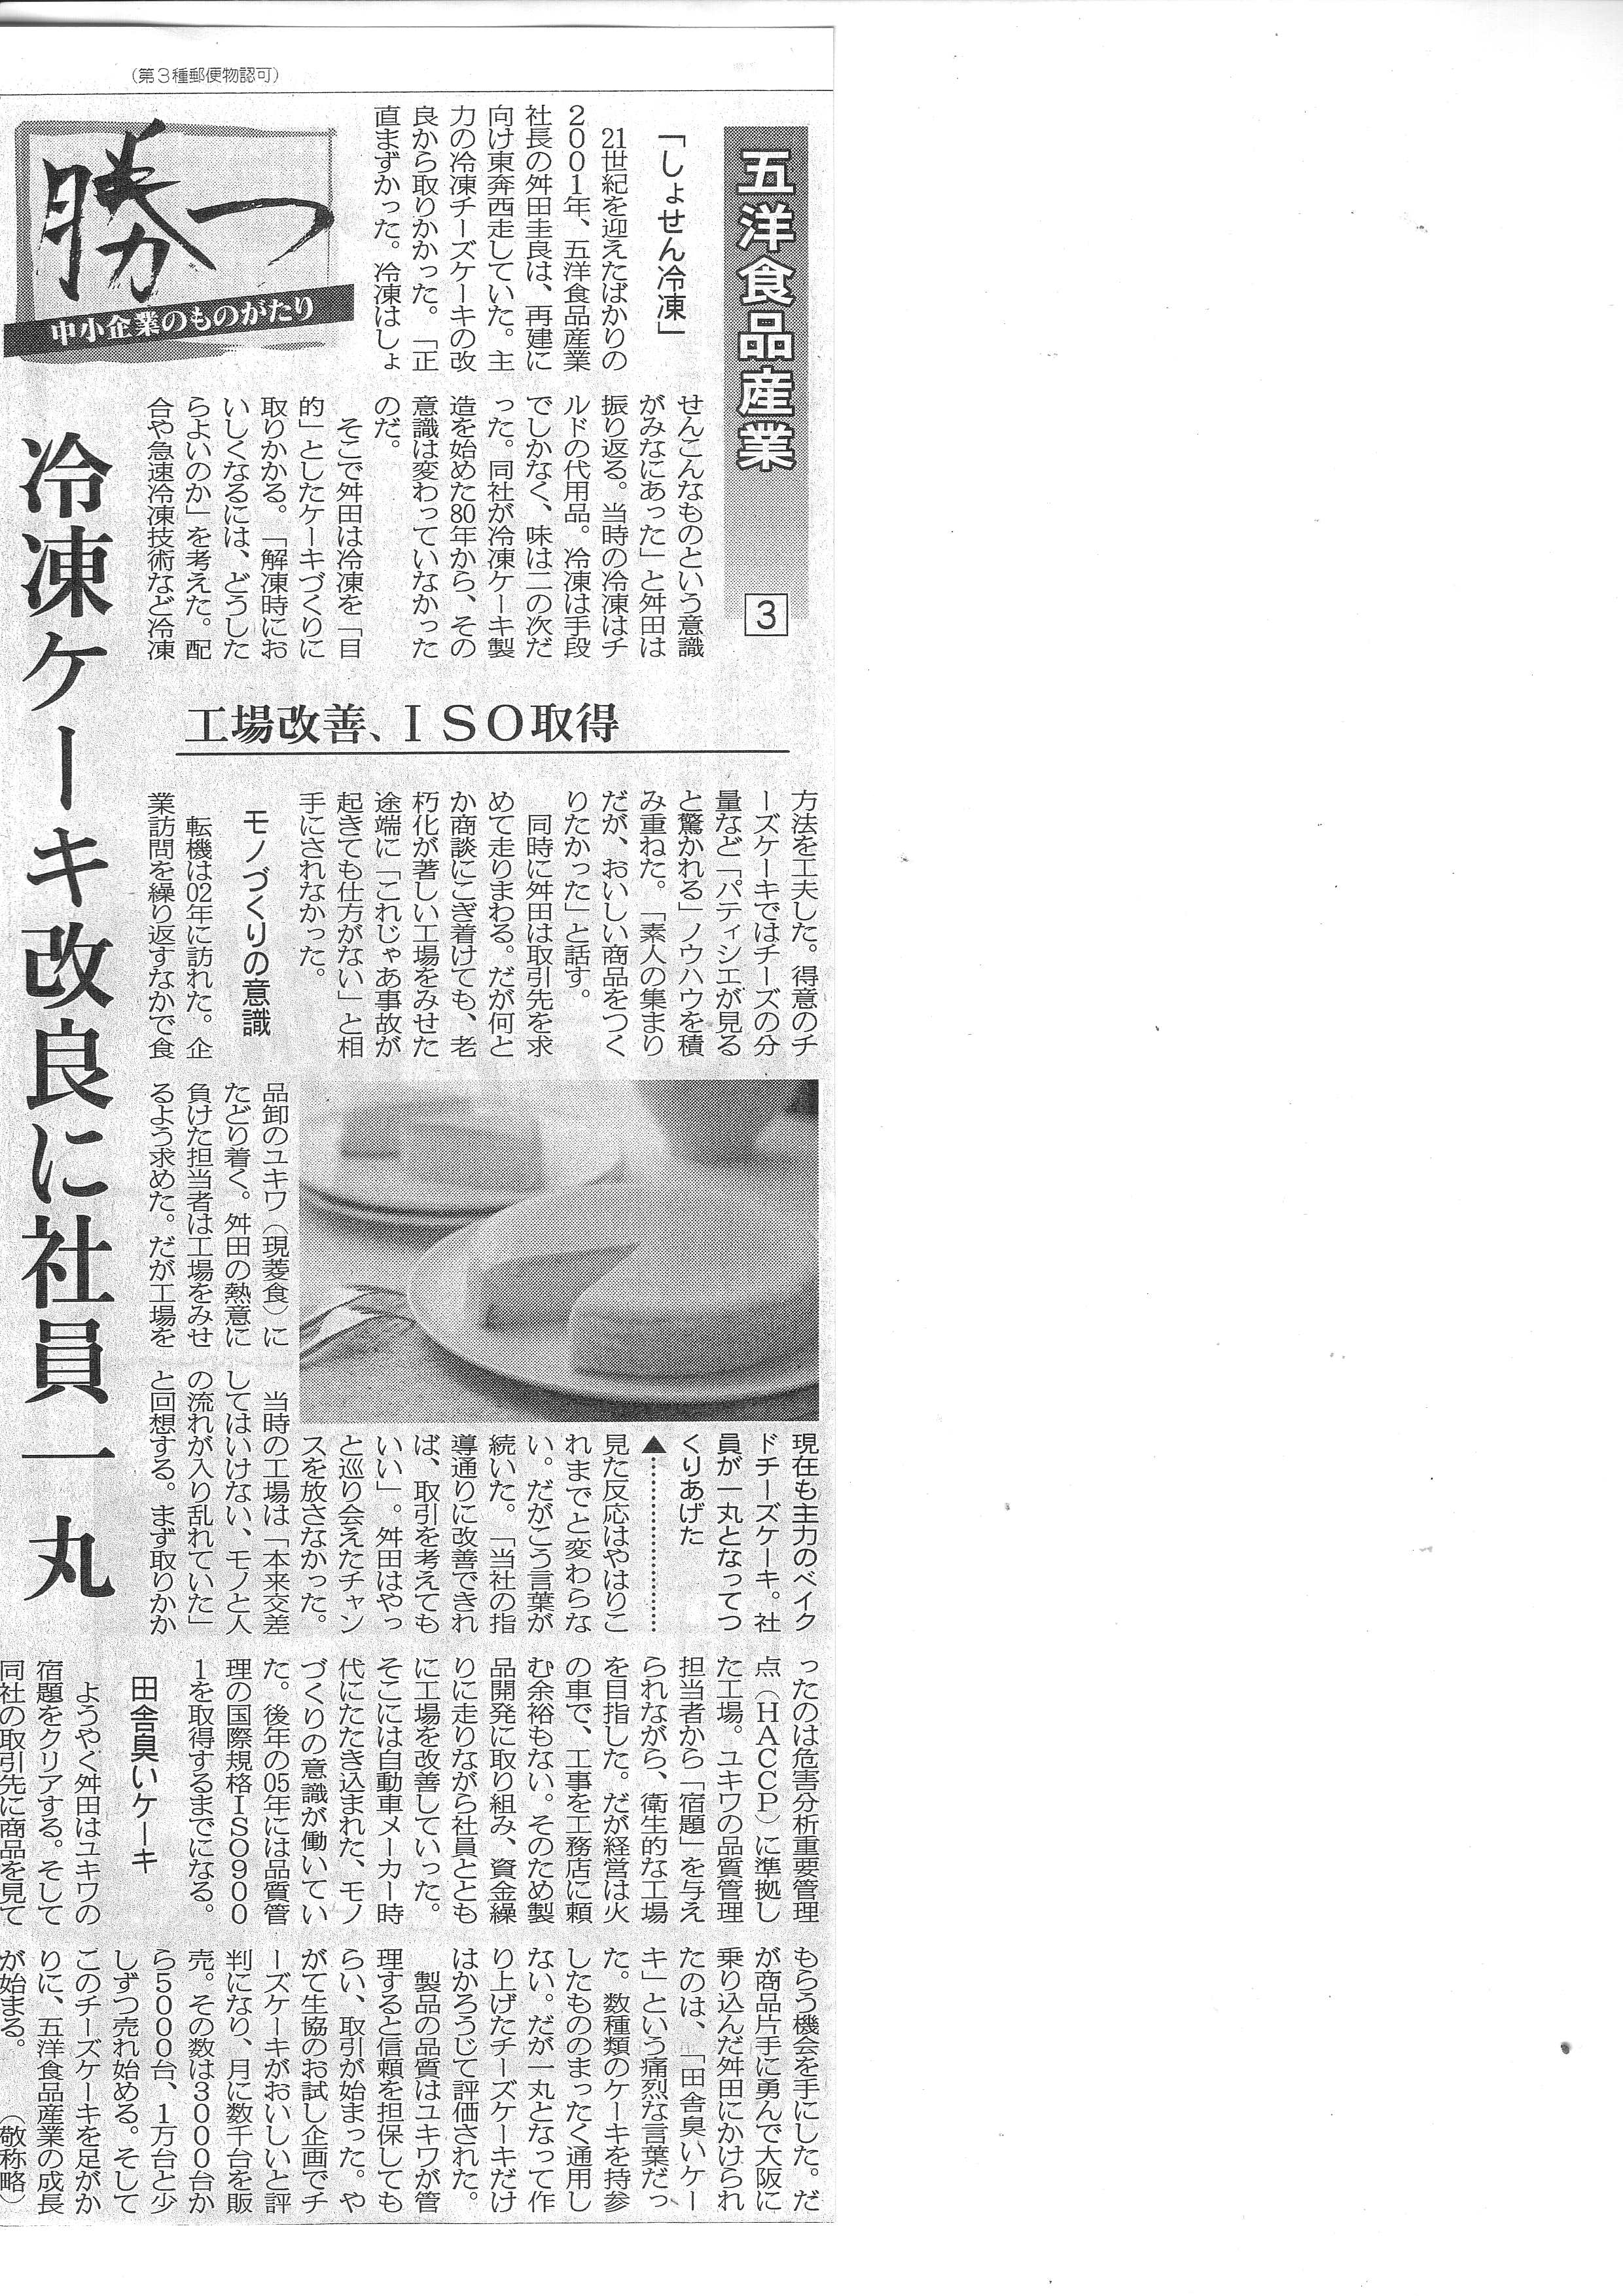 ニュースリリース | GO!YO!foods 五洋食品産業株式会社